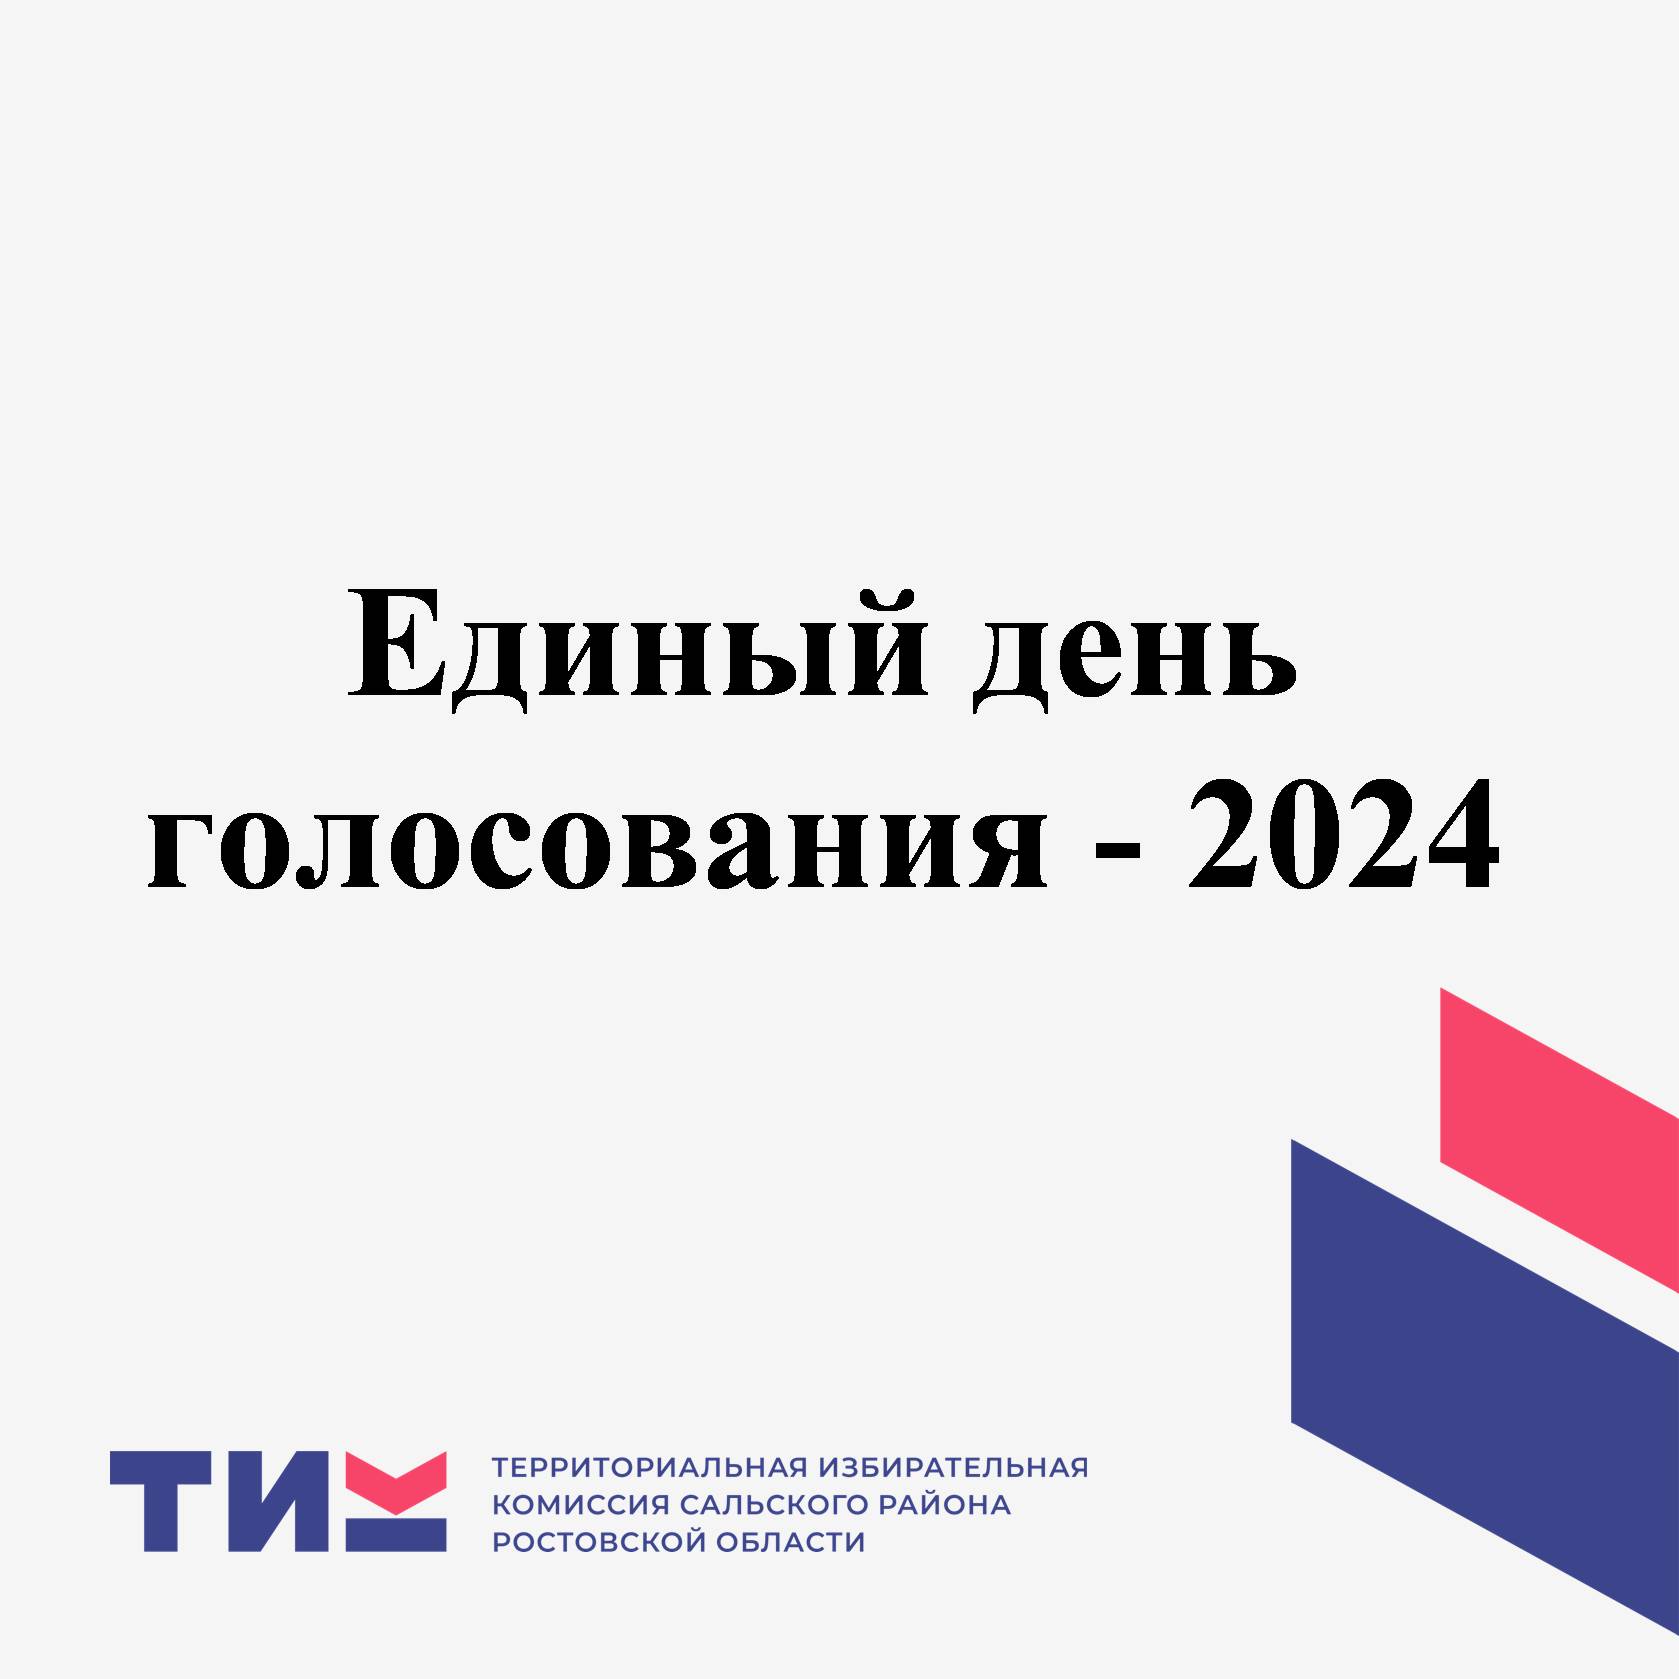 Избирательный цикл 2024 года на территории Ростовской области  не завершен.    